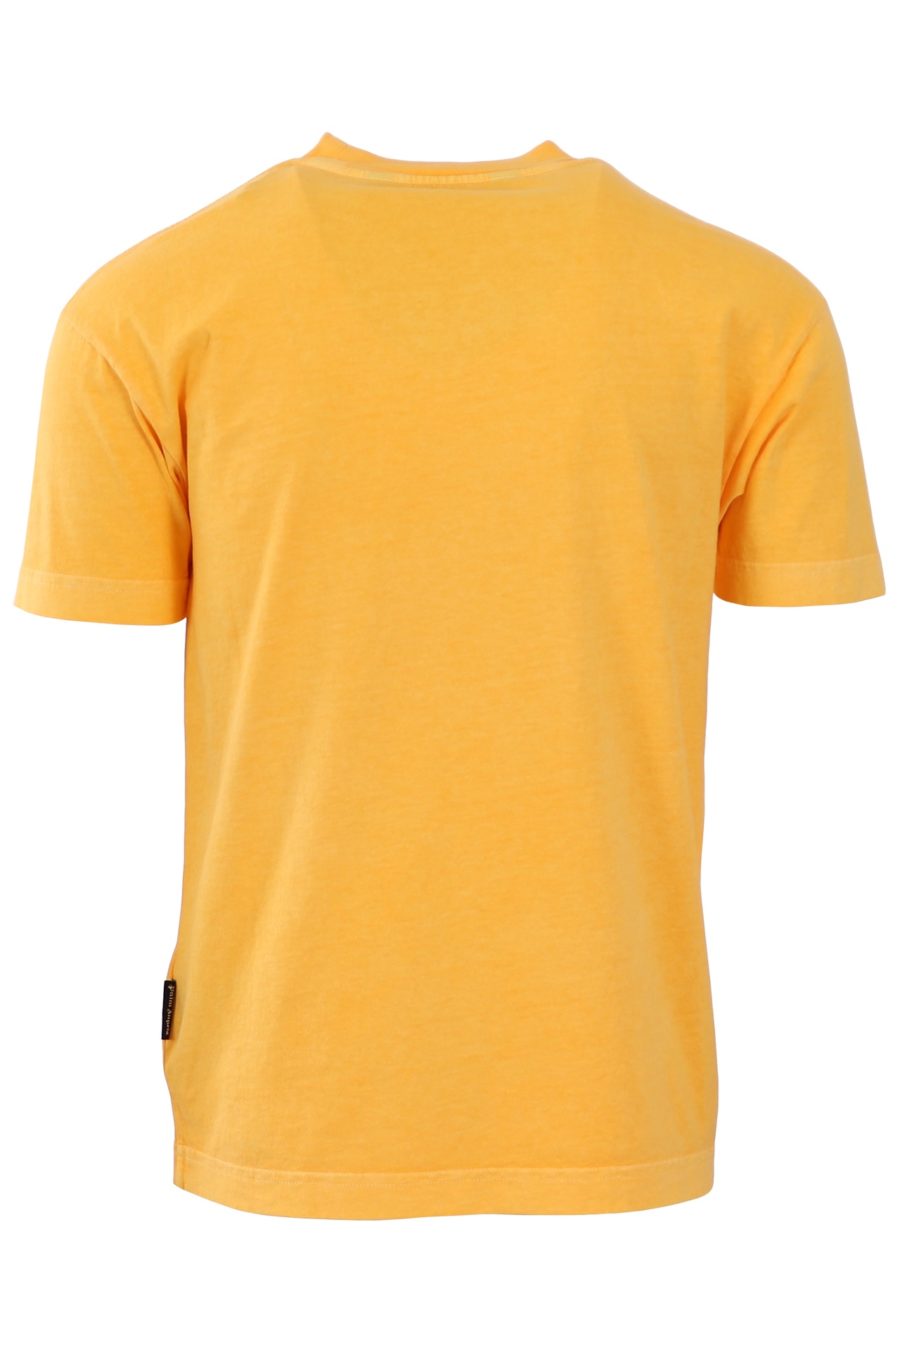 T-shirt Palm Angels jaune logo vert - 8e57556cbe0ec34b1ea81560a1f58d9c80d5ec90